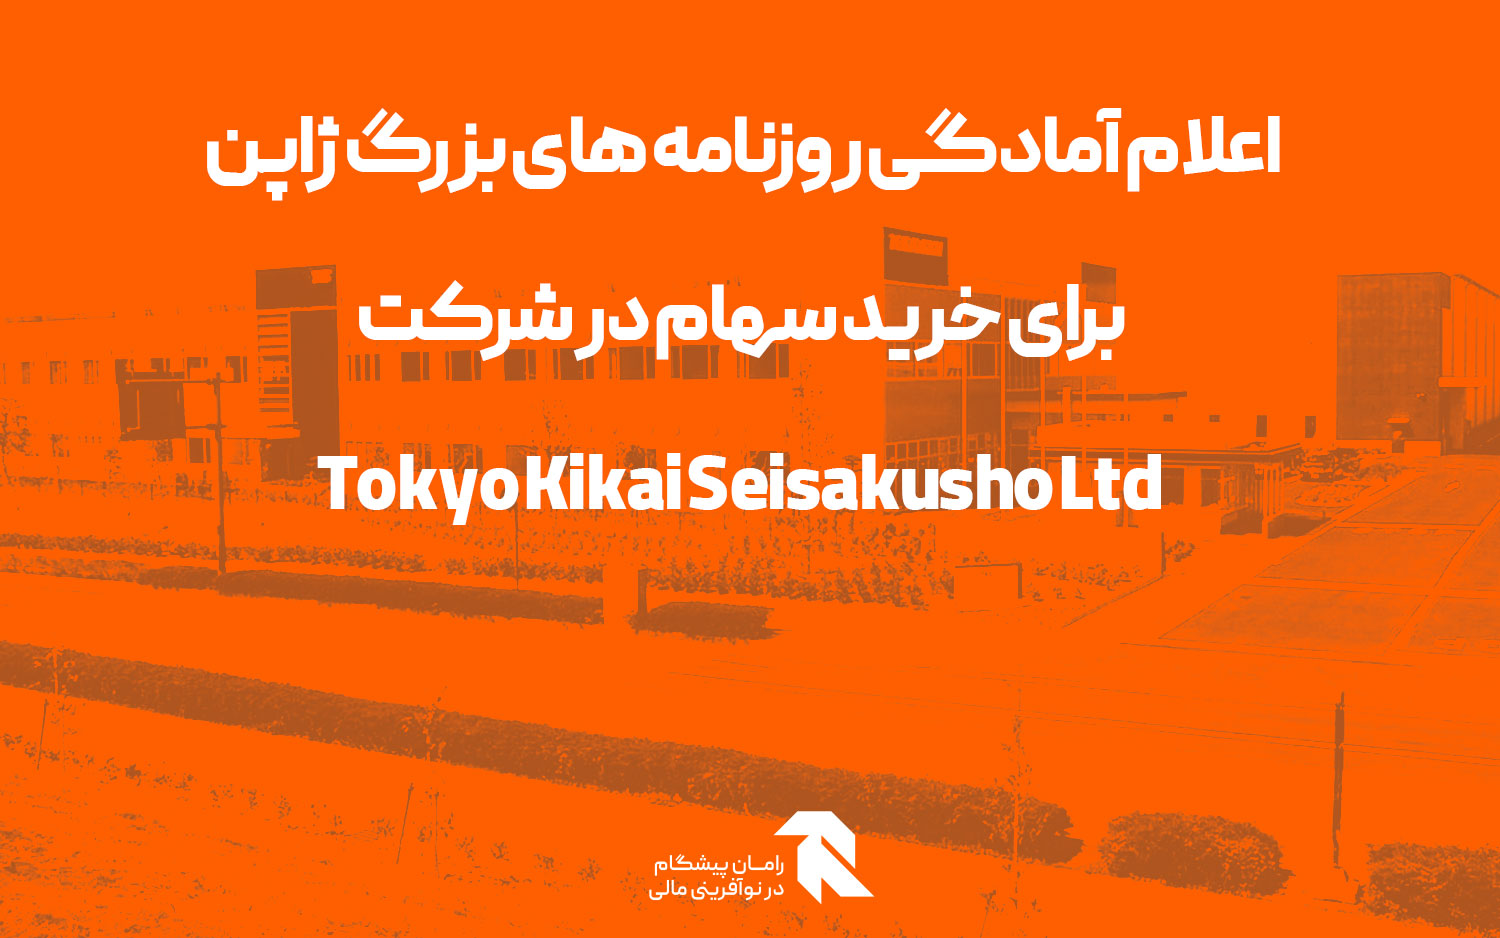 اعلام آمادگی روزنامه های بزرگ ژاپن برای خرید سهام در شرکت Tokyo Kikai Seisakusho Ltd